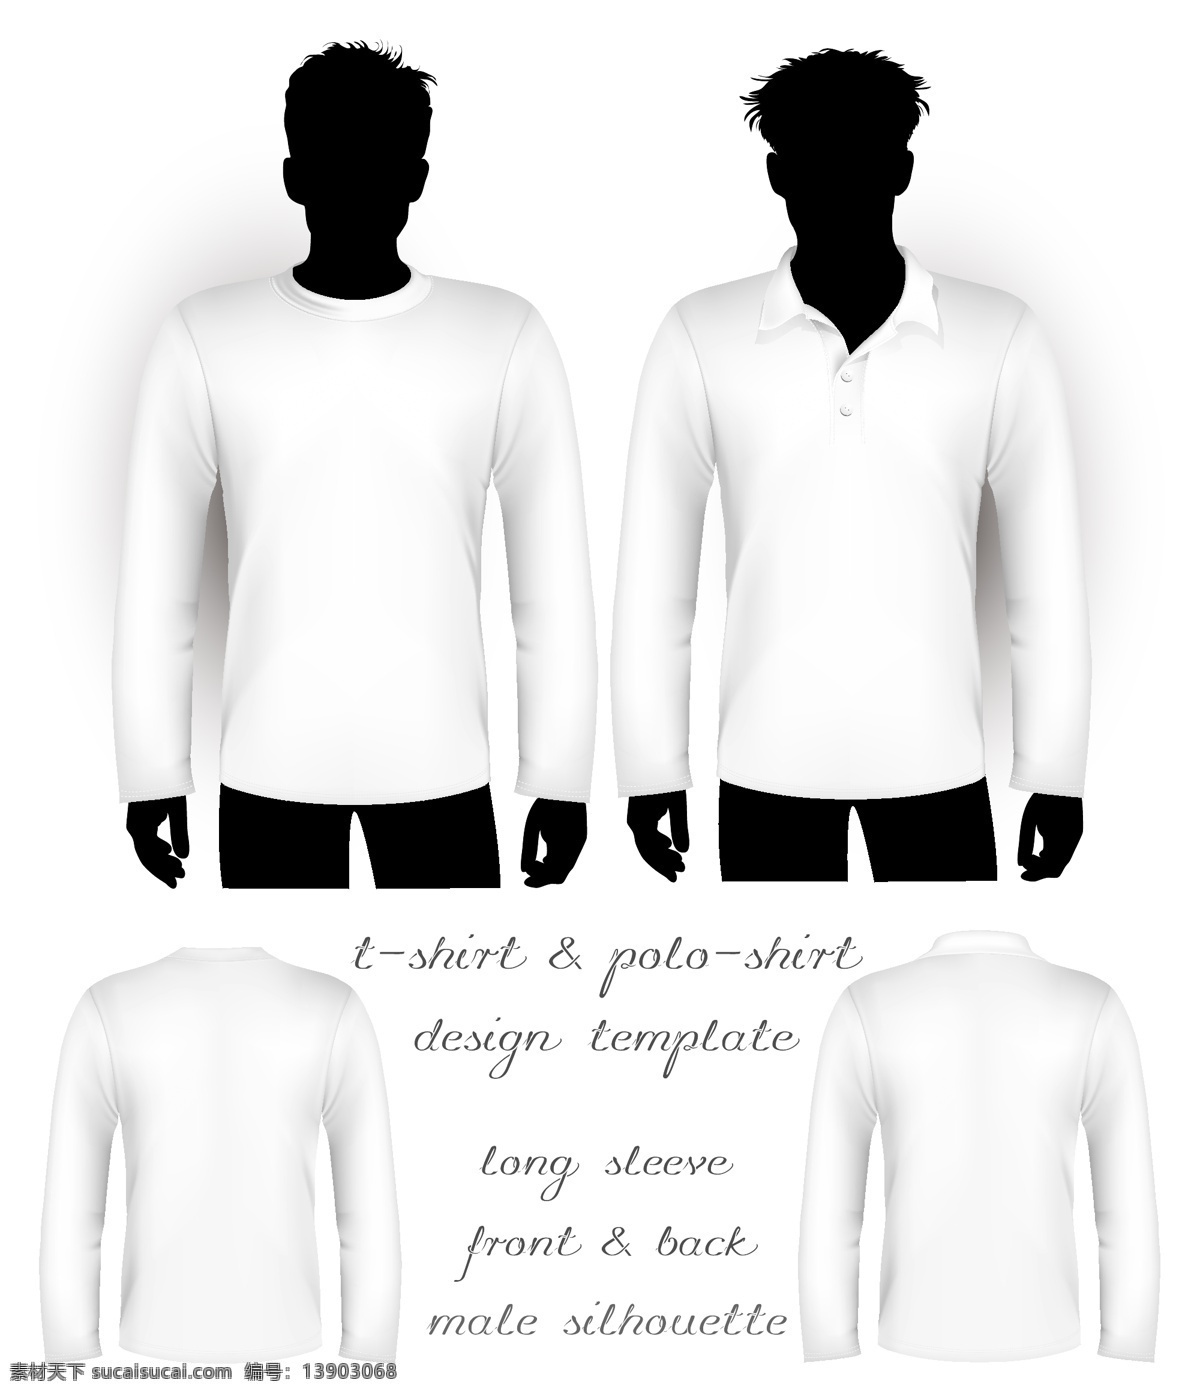 shirt t恤设计 服装设计 t 恤 矢量 模板下载 效果图 正面 背面 tshirt 其他服装素材